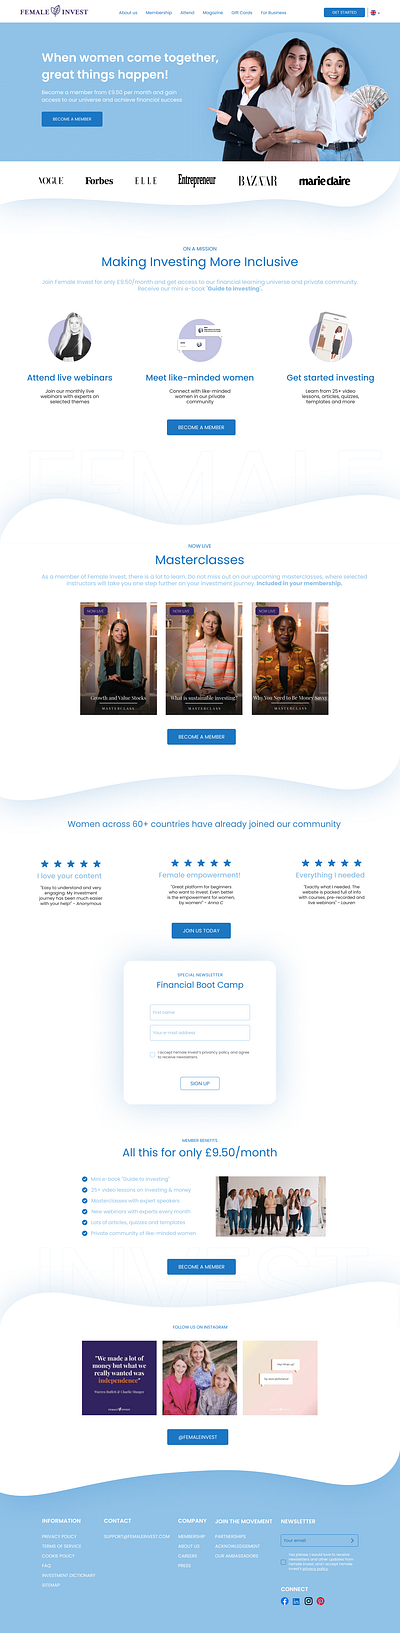 Female Invest Landing Page Redesign branding design figma ui ui design ui ux website ui